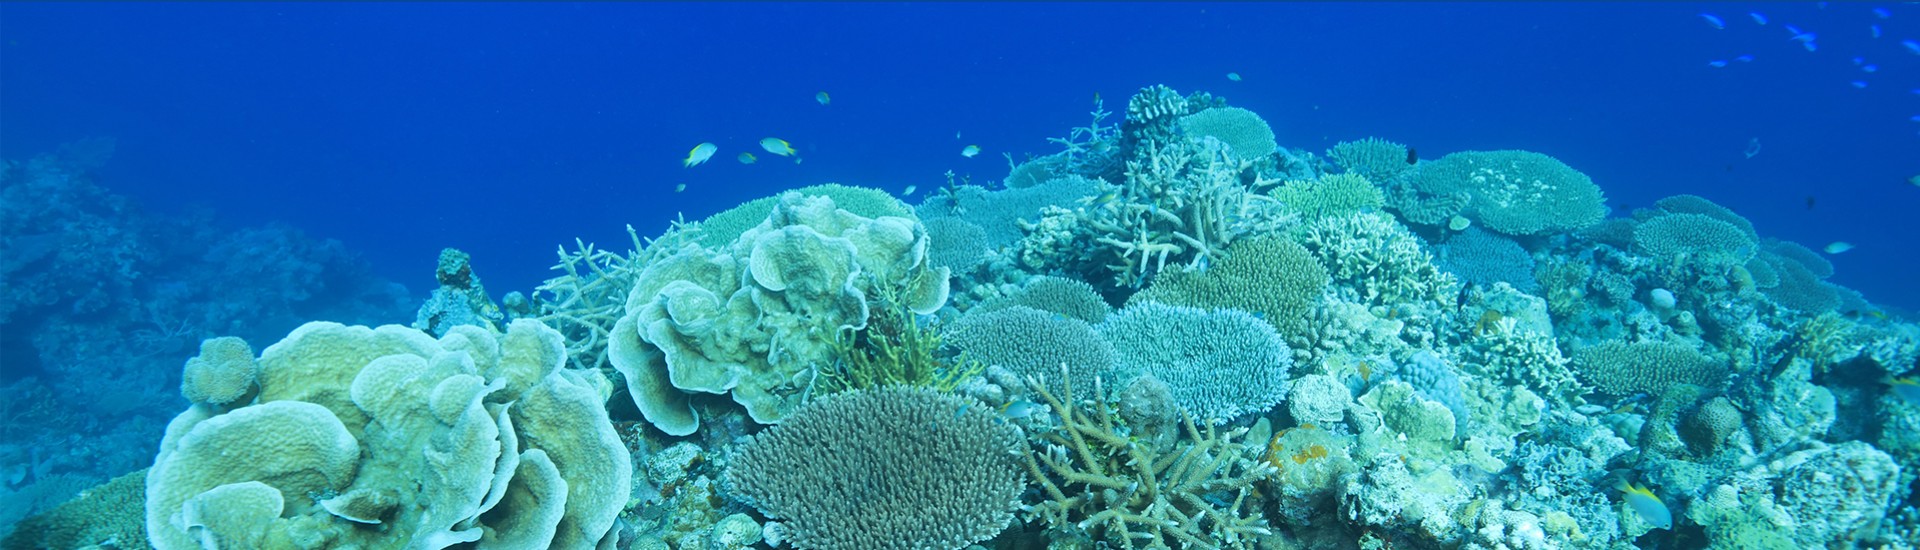 南海珊瑚礁